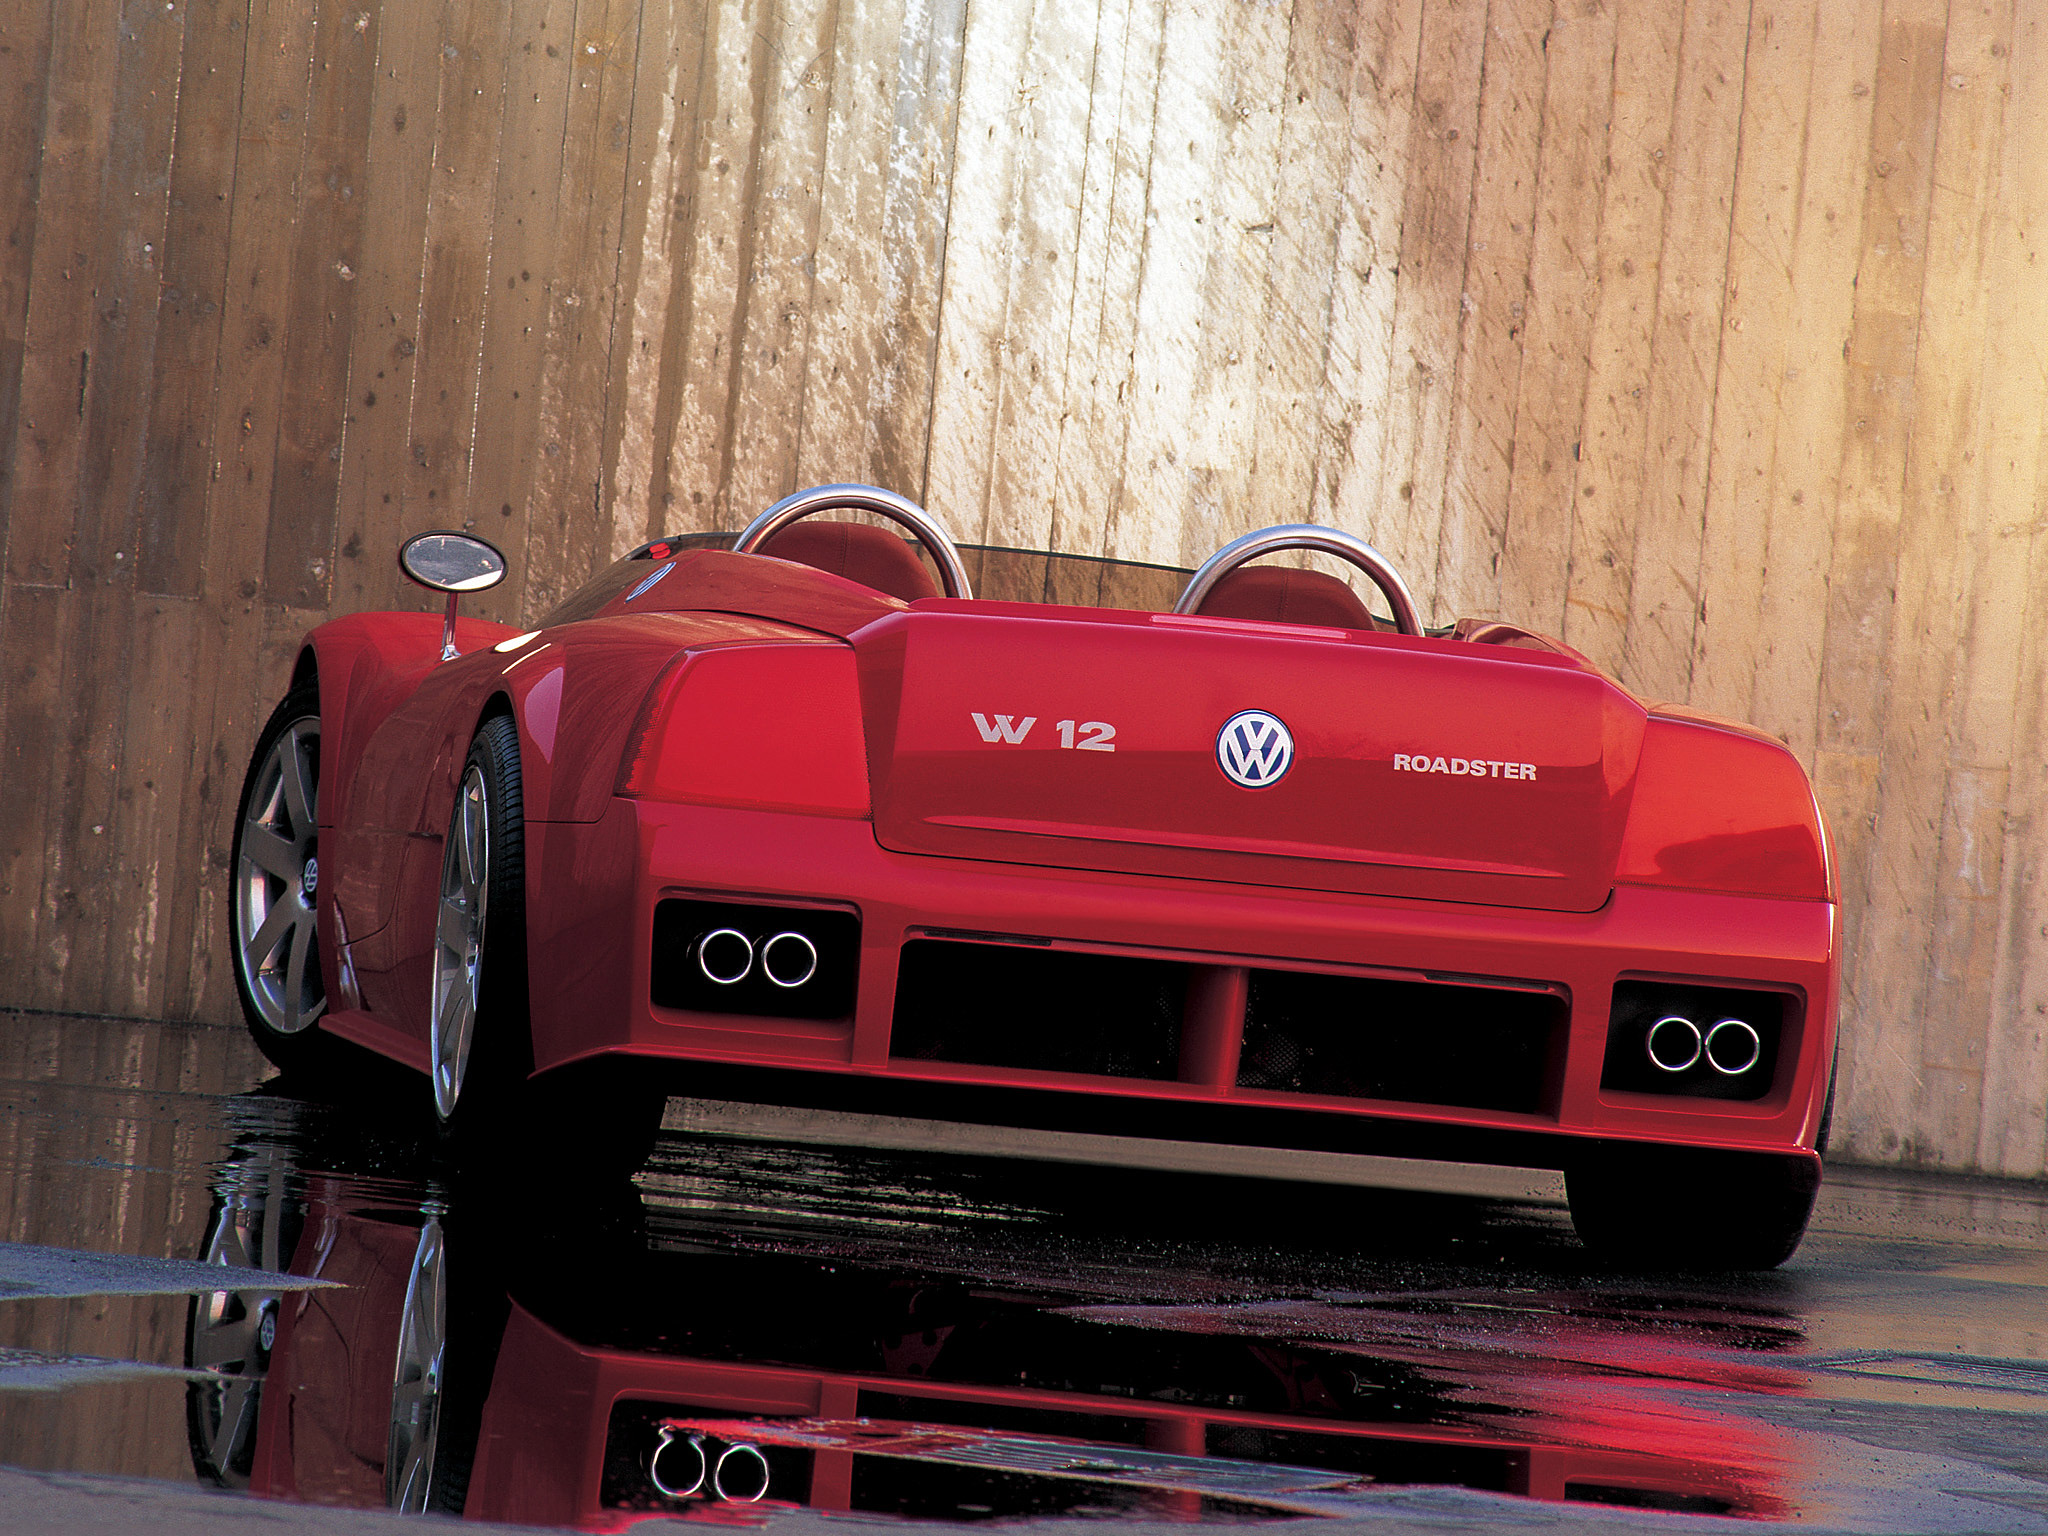  1998 Volkswagen W12 Roadster Concept Wallpaper.